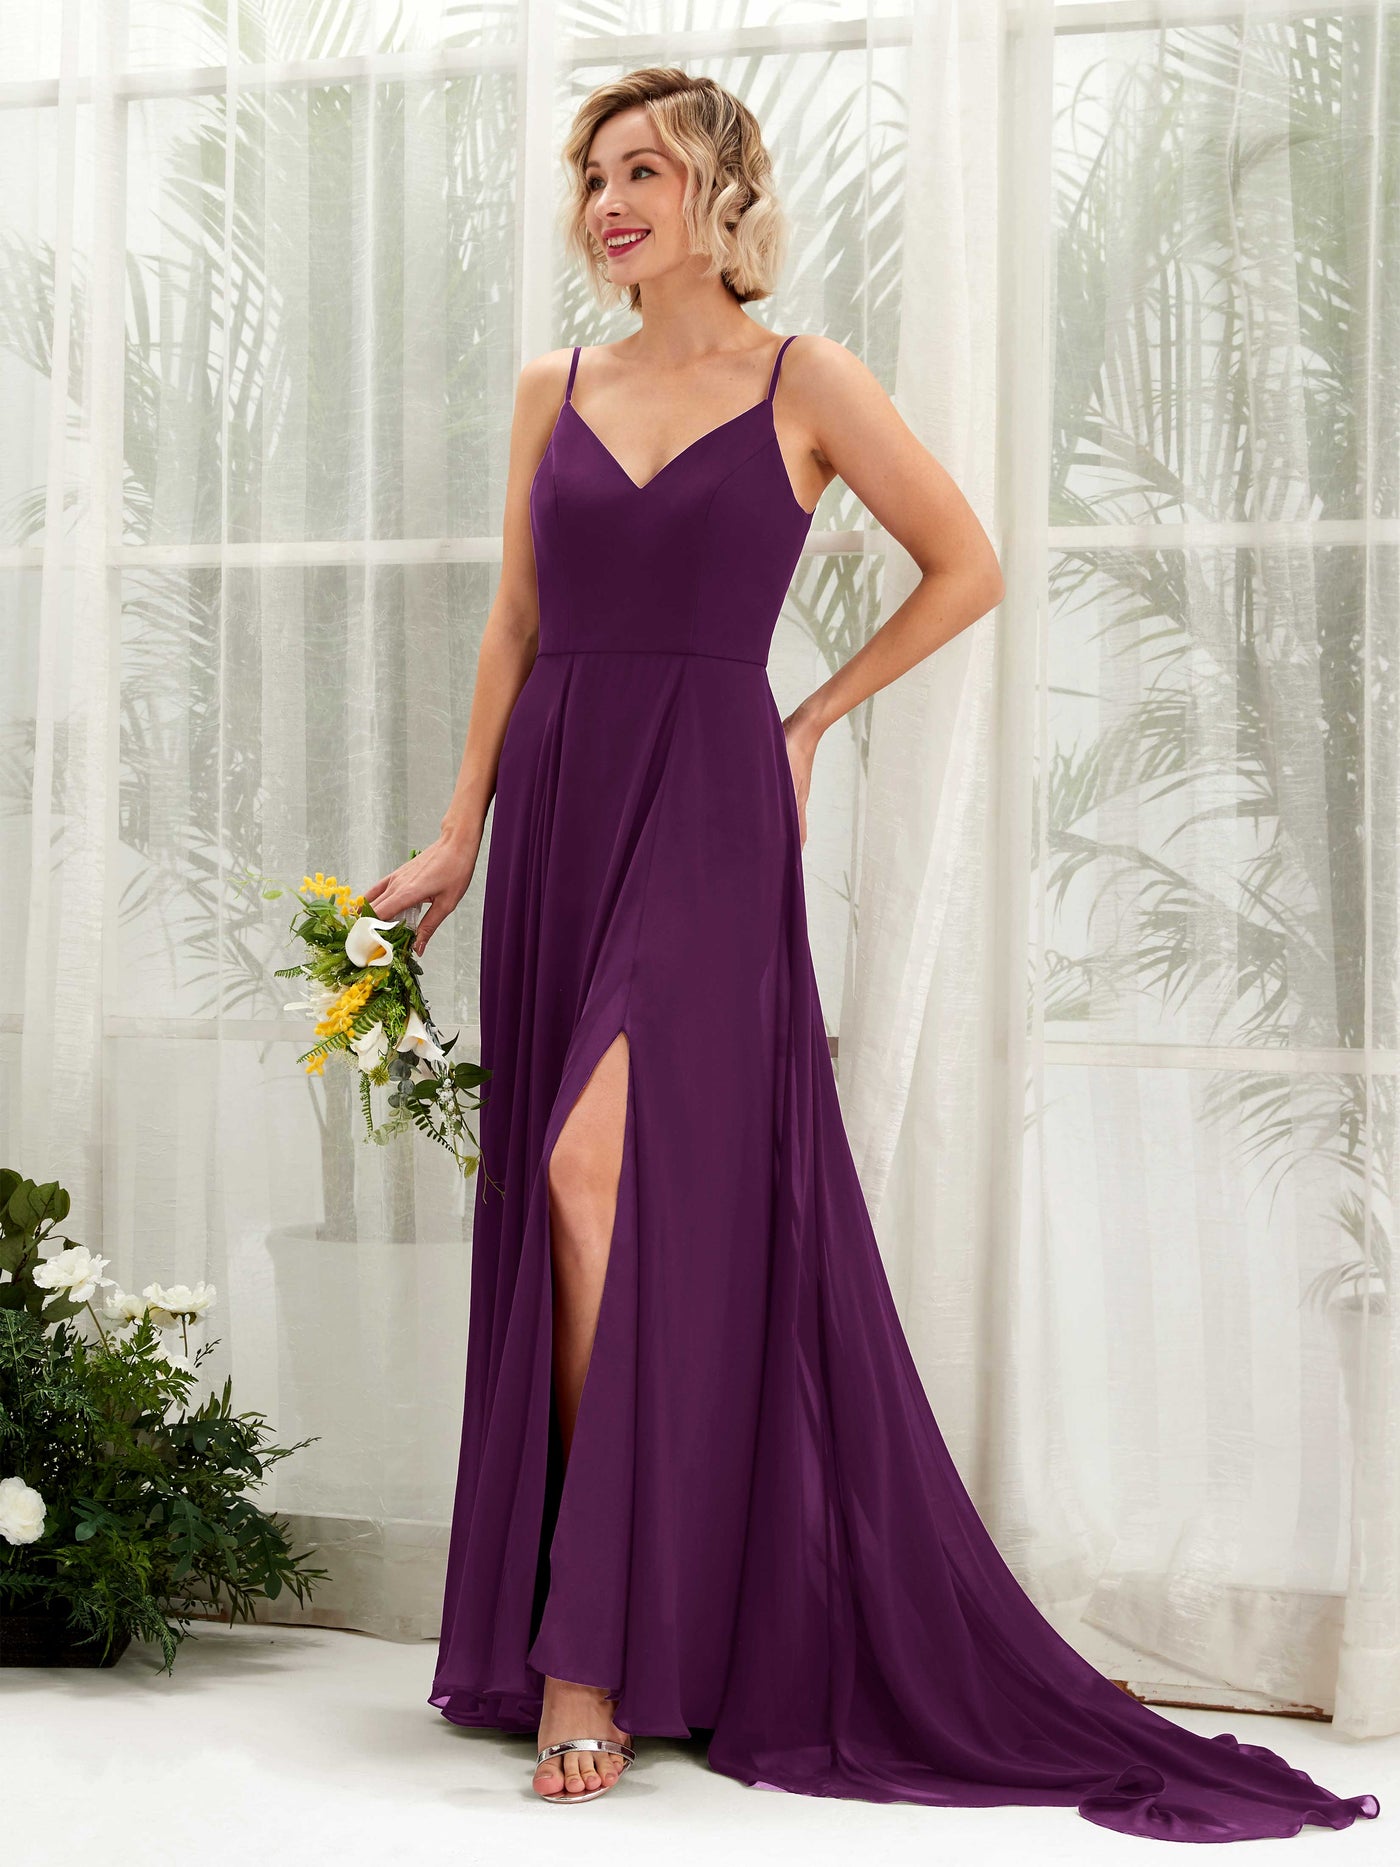 Grape Bridesmaid Dresses Bridesmaid Dress A-line Chiffon V-neck Full Length Sleeveless Wedding Party Dress (81224131)#color_grape